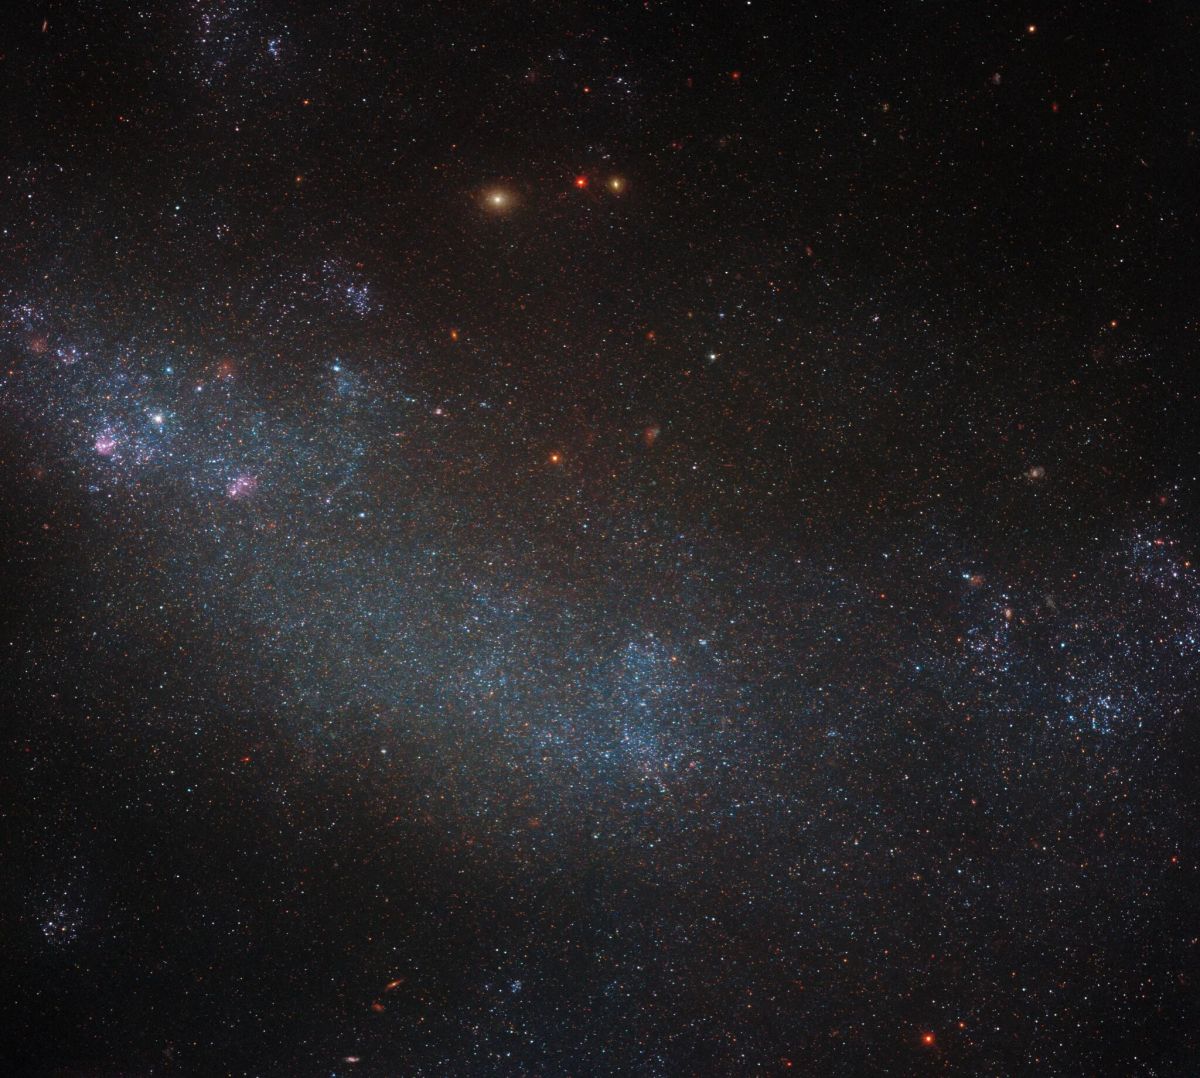 ESO 245-5